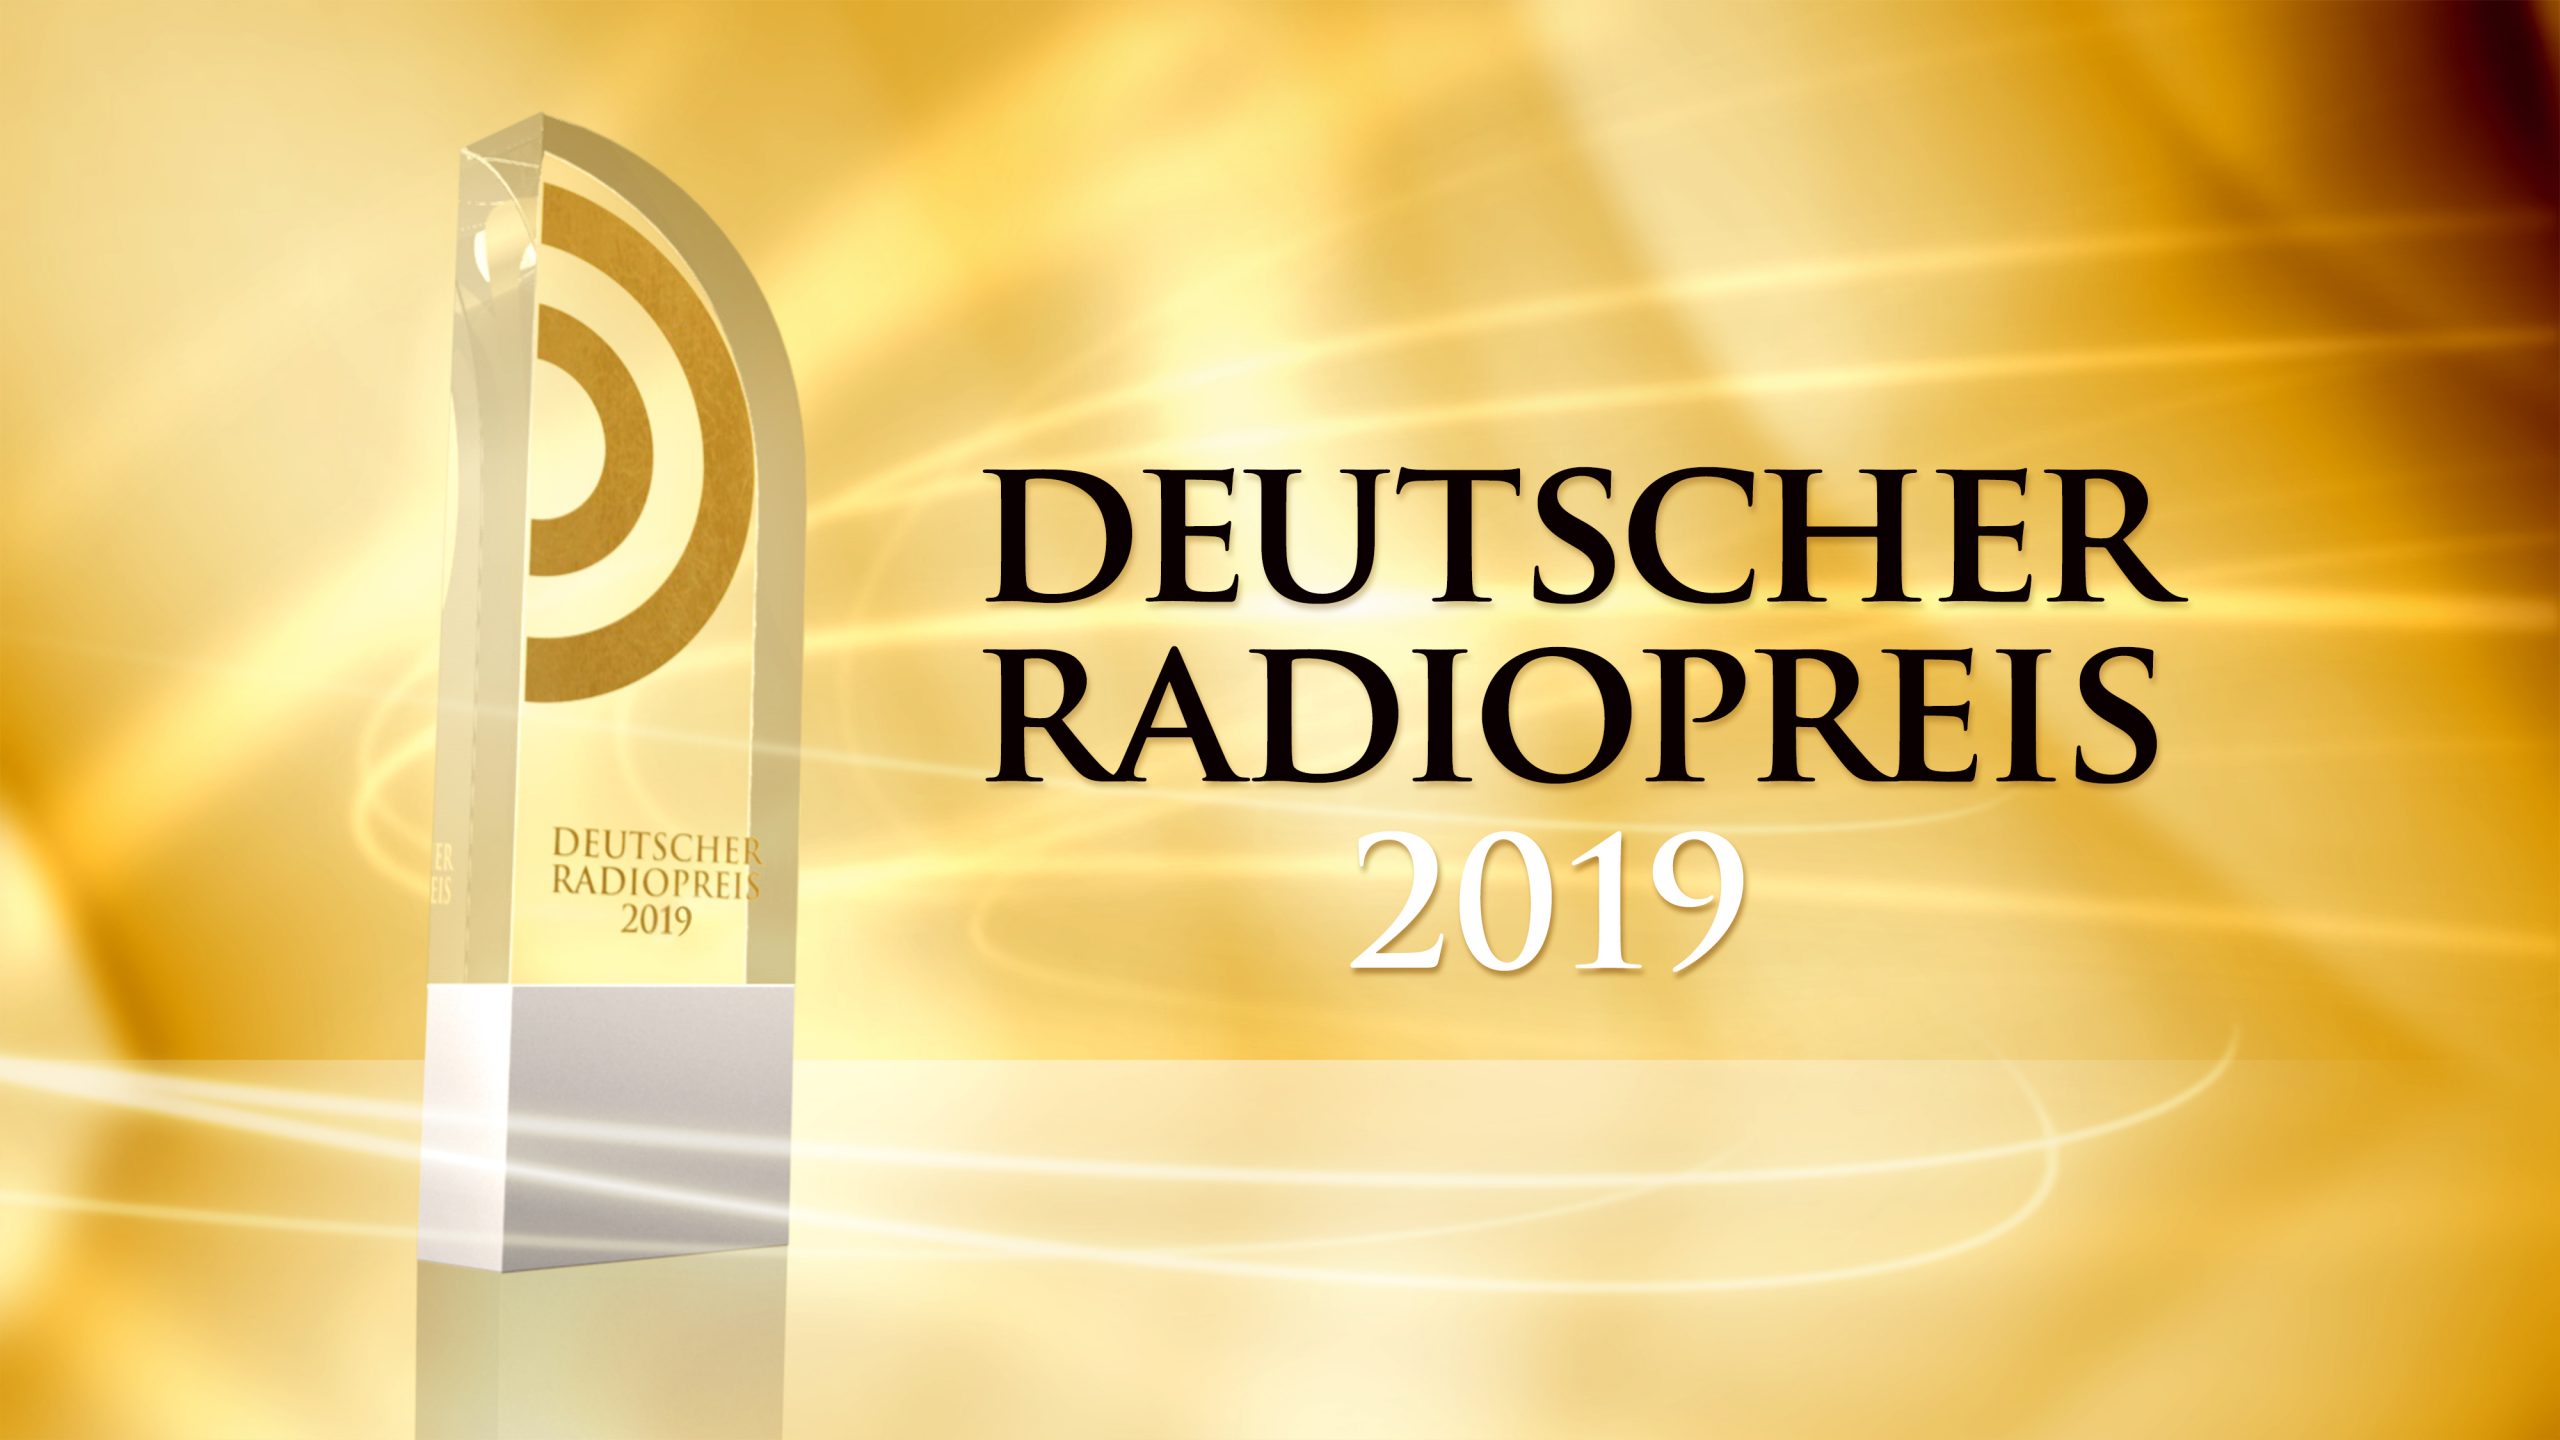 Deutscher Radiopreis 2019